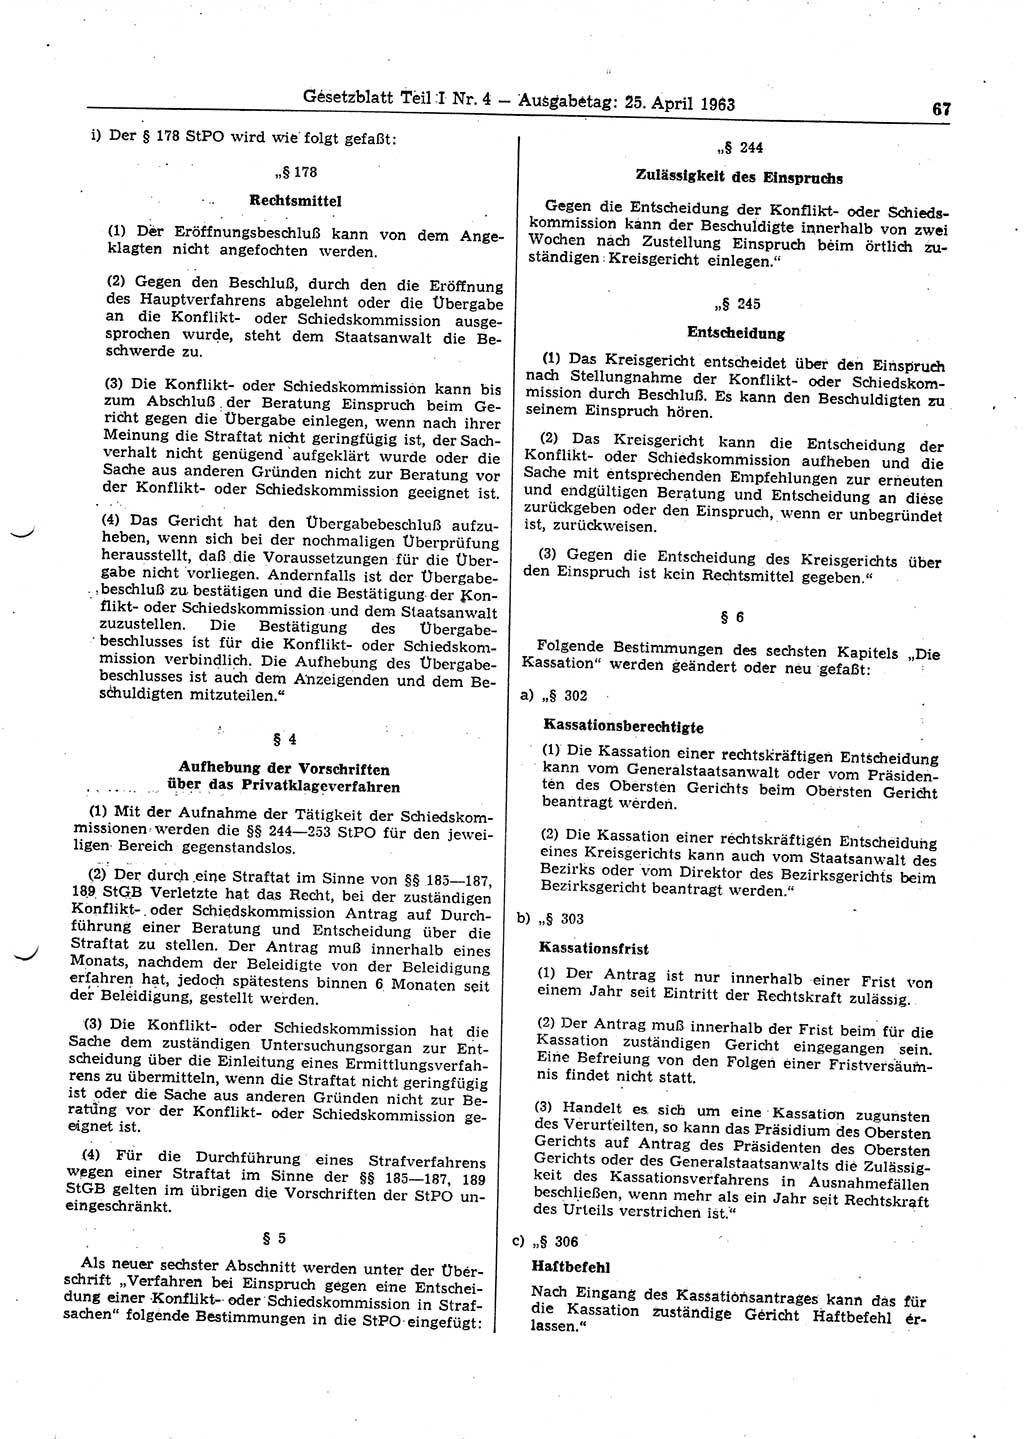 Gesetzblatt (GBl.) der Deutschen Demokratischen Republik (DDR) Teil Ⅰ 1963, Seite 67 (GBl. DDR Ⅰ 1963, S. 67)